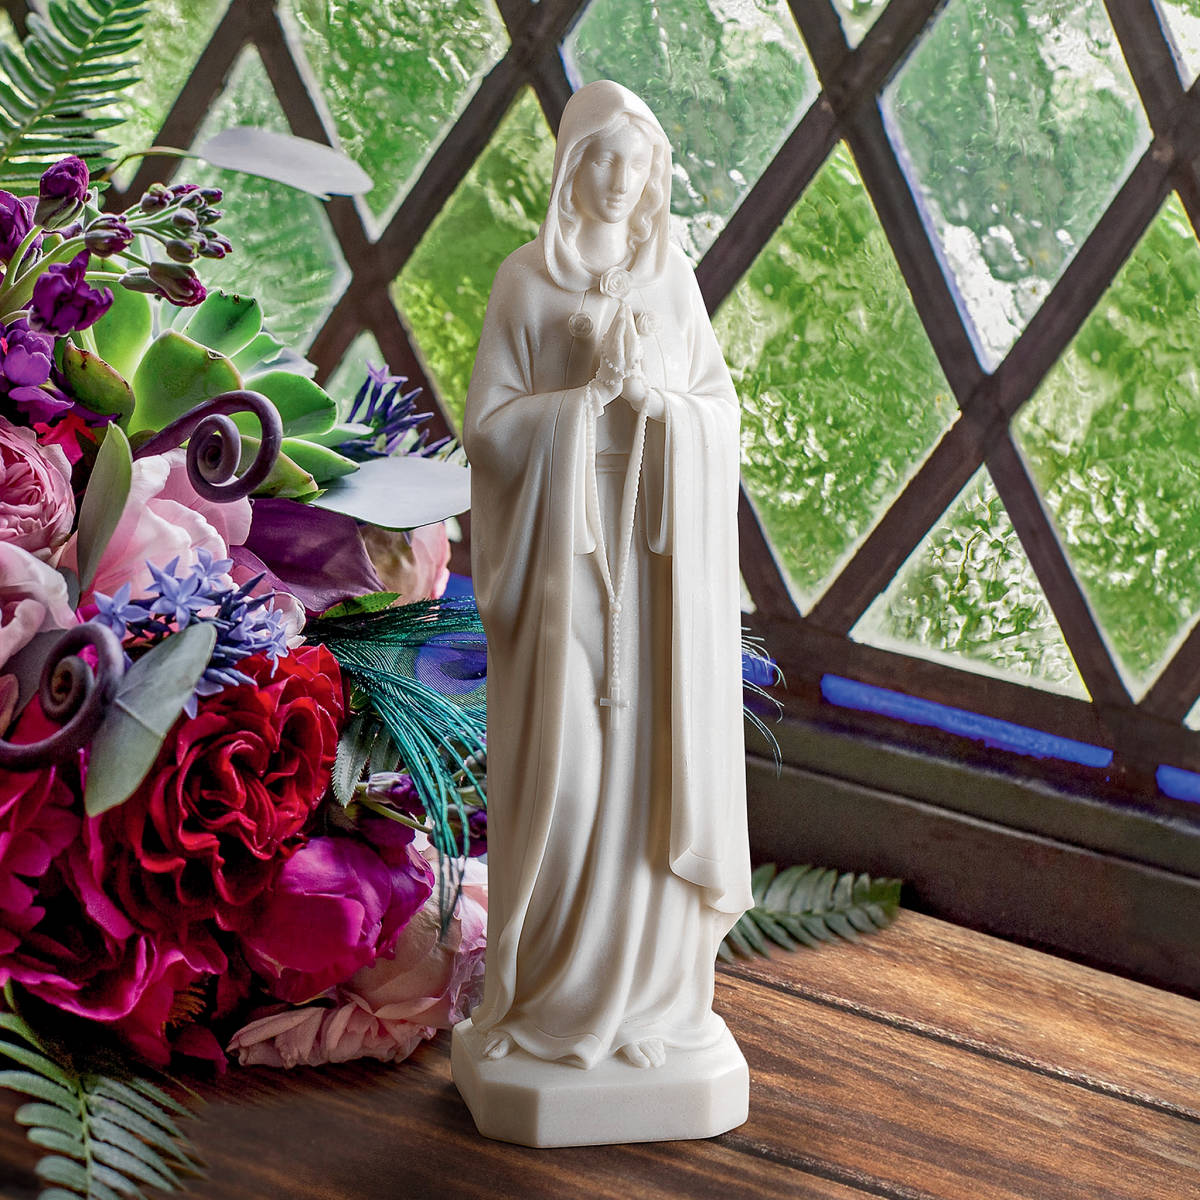 聖母マリア像 イタリア様式西洋彫刻洋風オブジェ宗教美術像インテリア置物雑貨キリスト教美術マリア像マリア教会美術品ホームデコ装飾品 